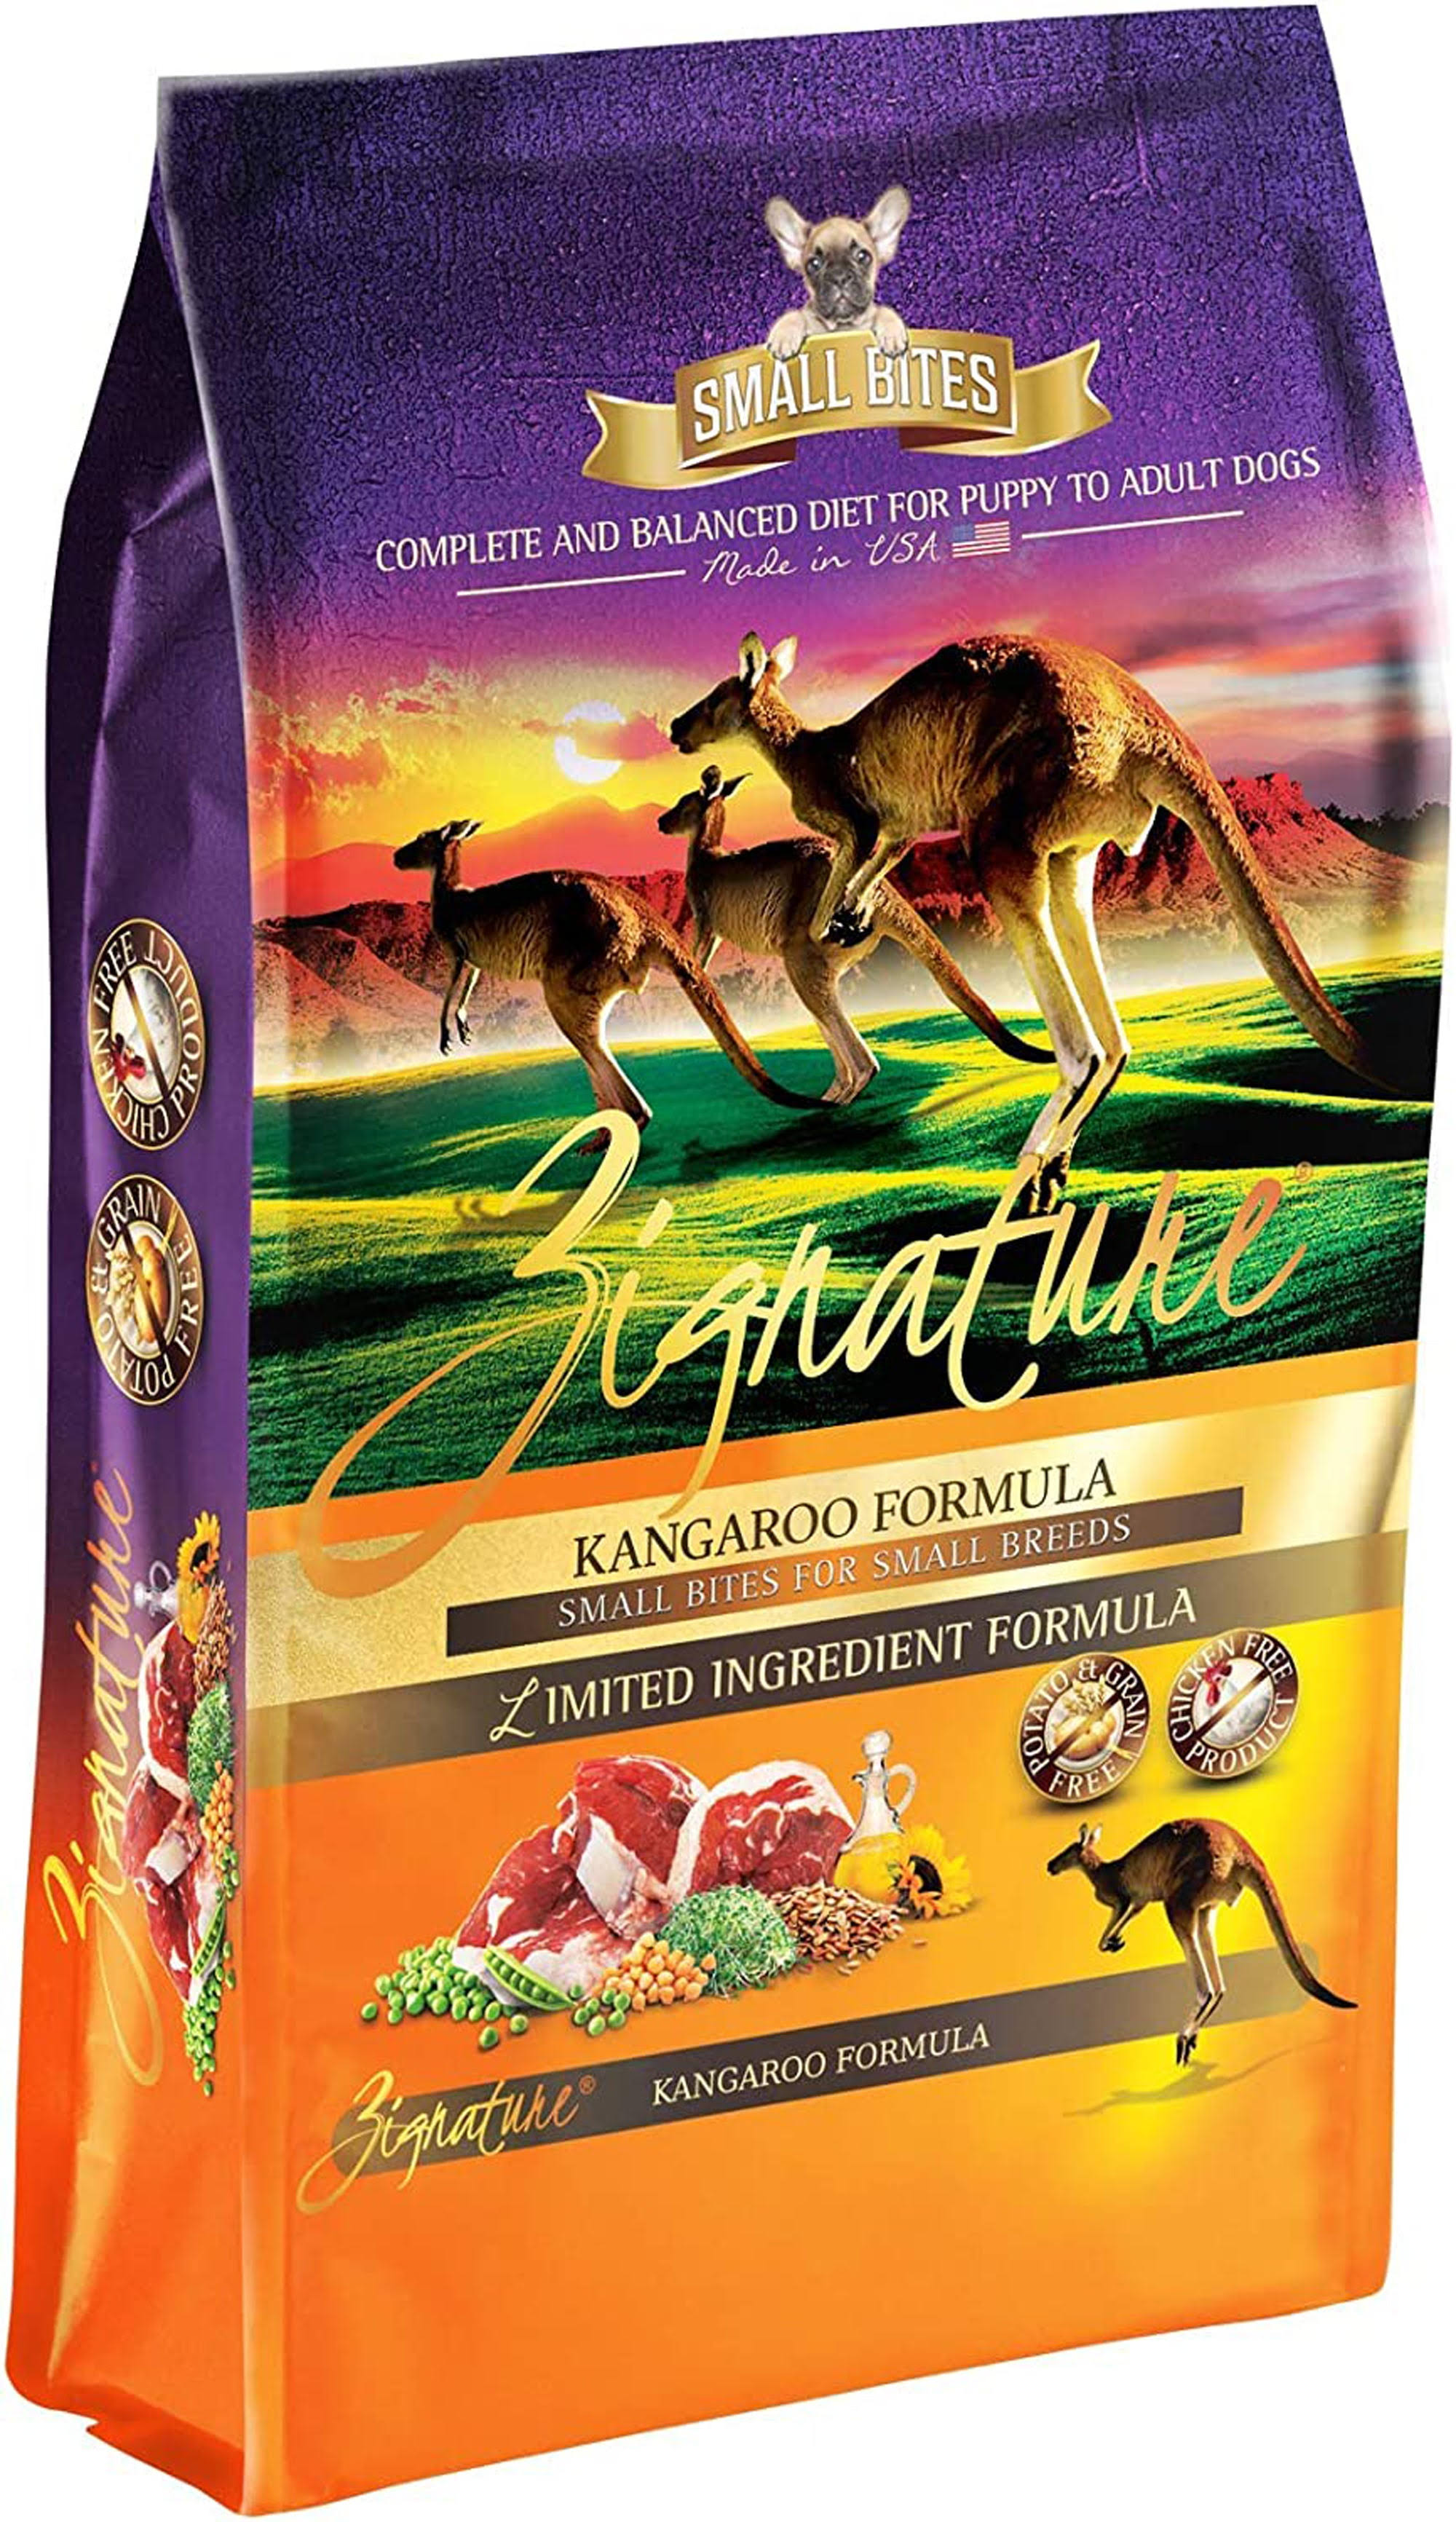 Zignature Kangaroo Formula Small Bites Dry Dog Food - 4 lbs